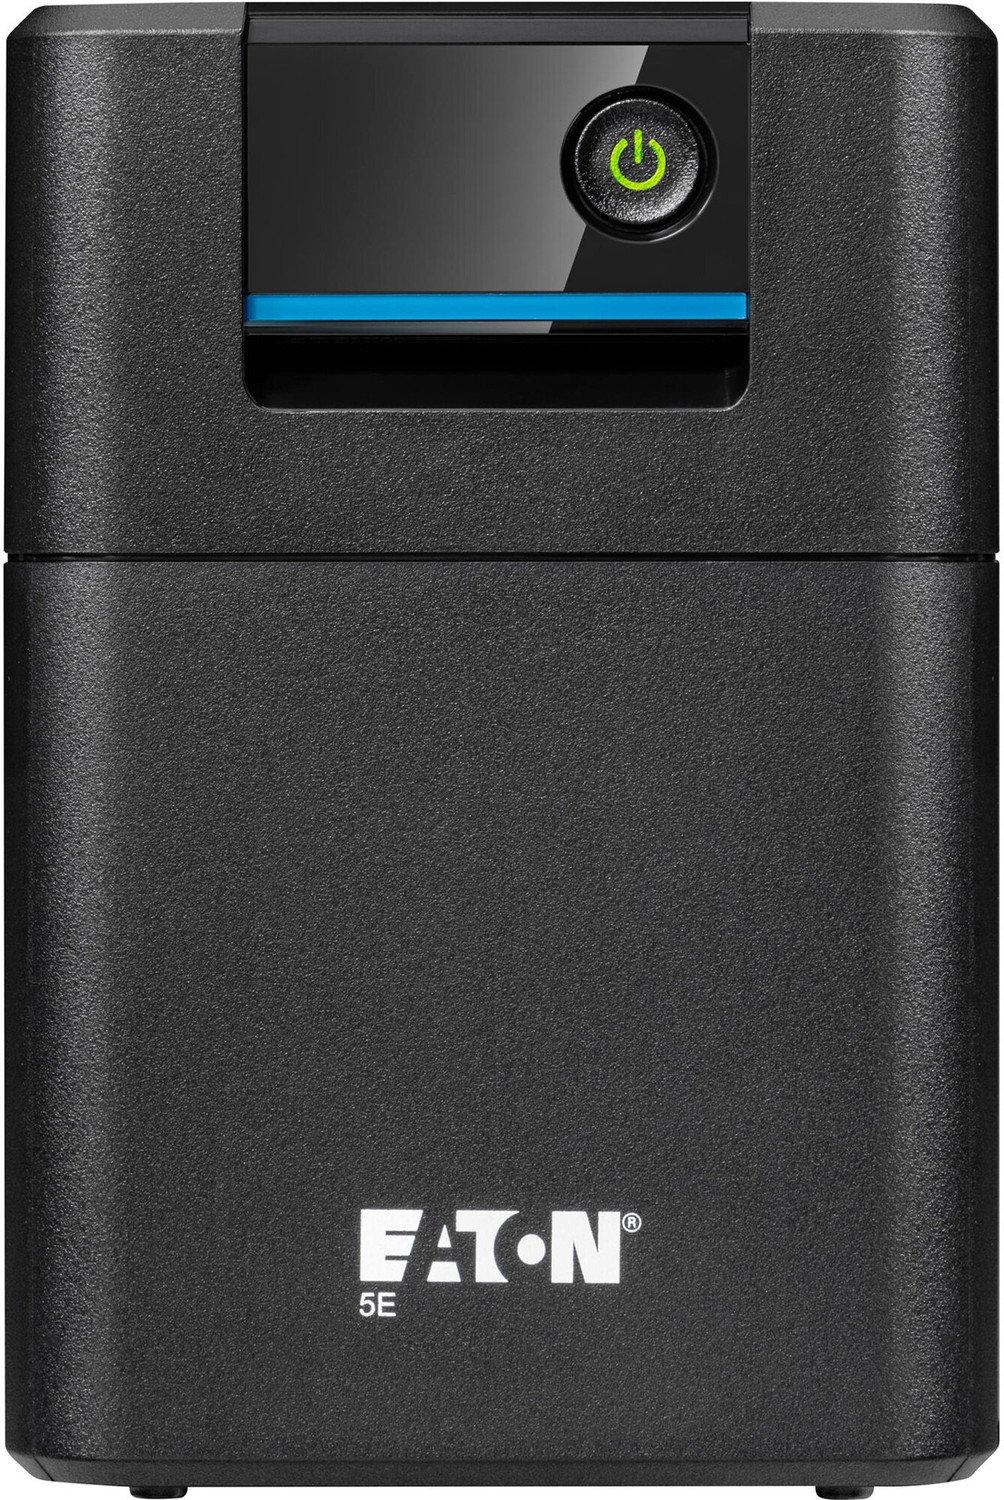 Eaton 5E 550 IEC G2 - 5E550I